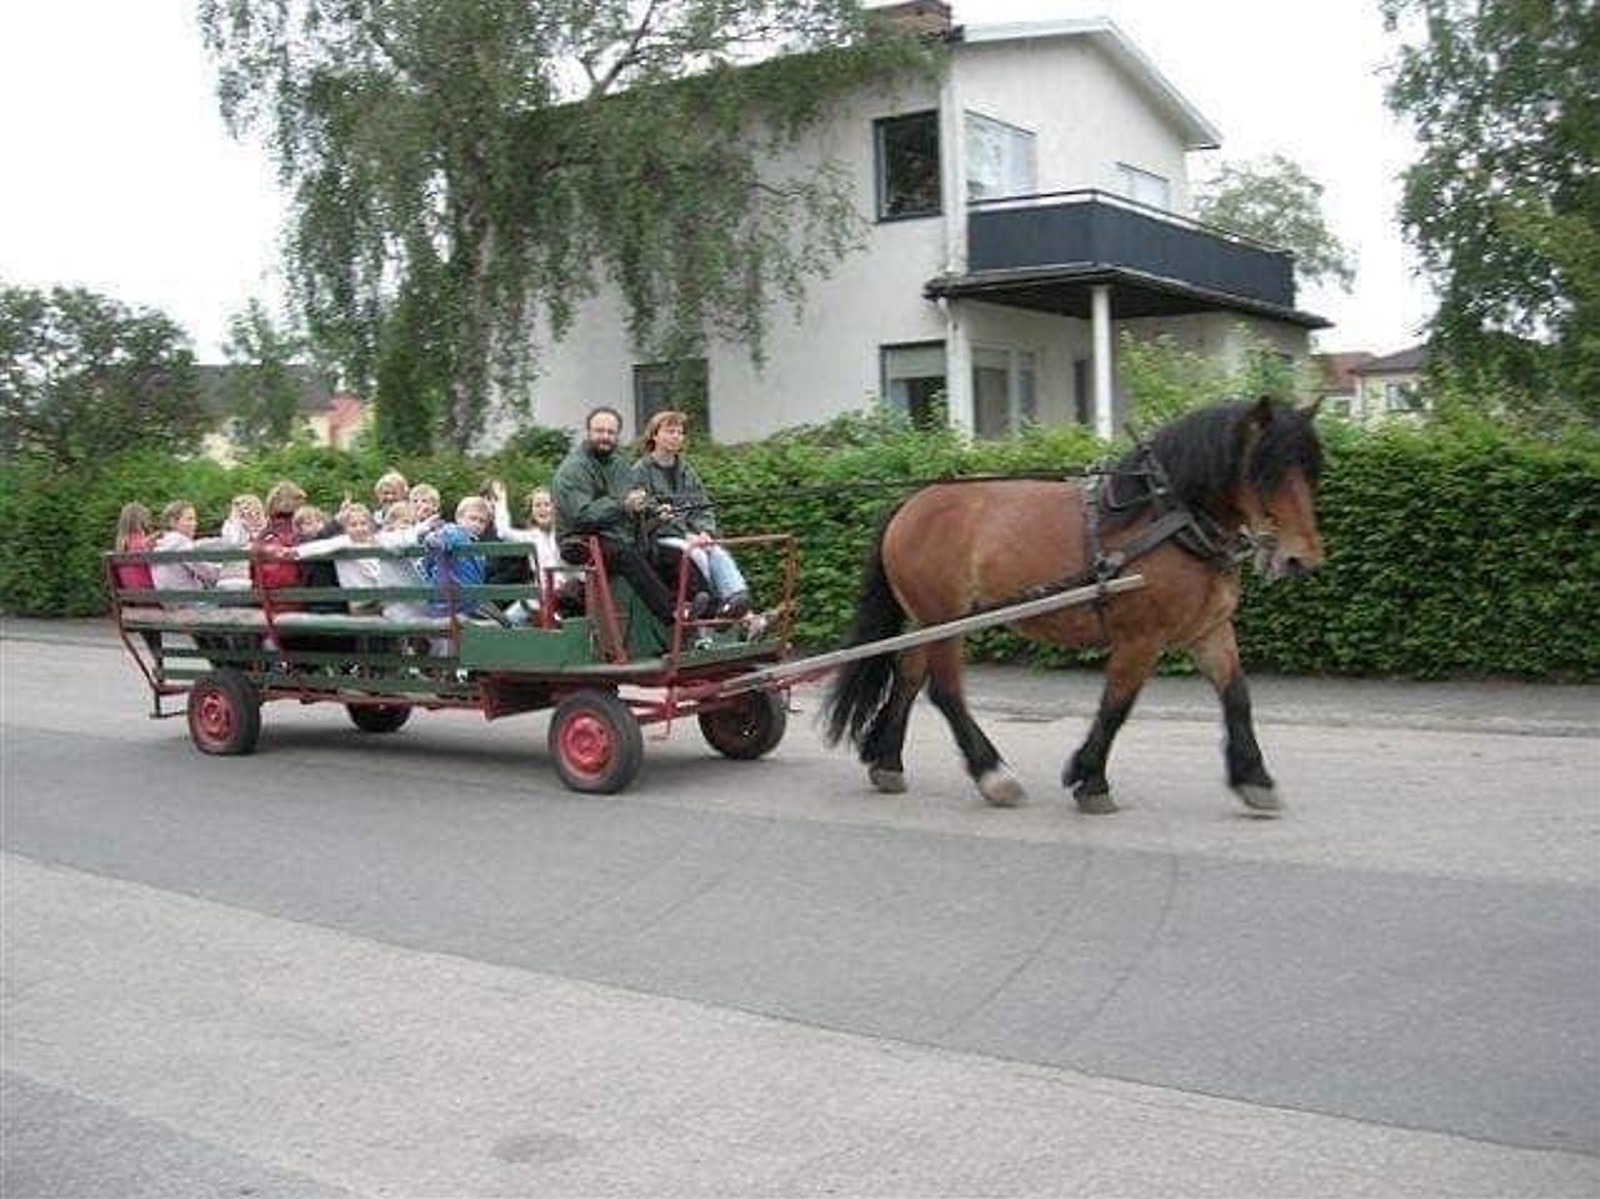 Stall Stingson bjuder på åktur med häst och vagn i Killeberg på lördag. FOTO: PRIVAT